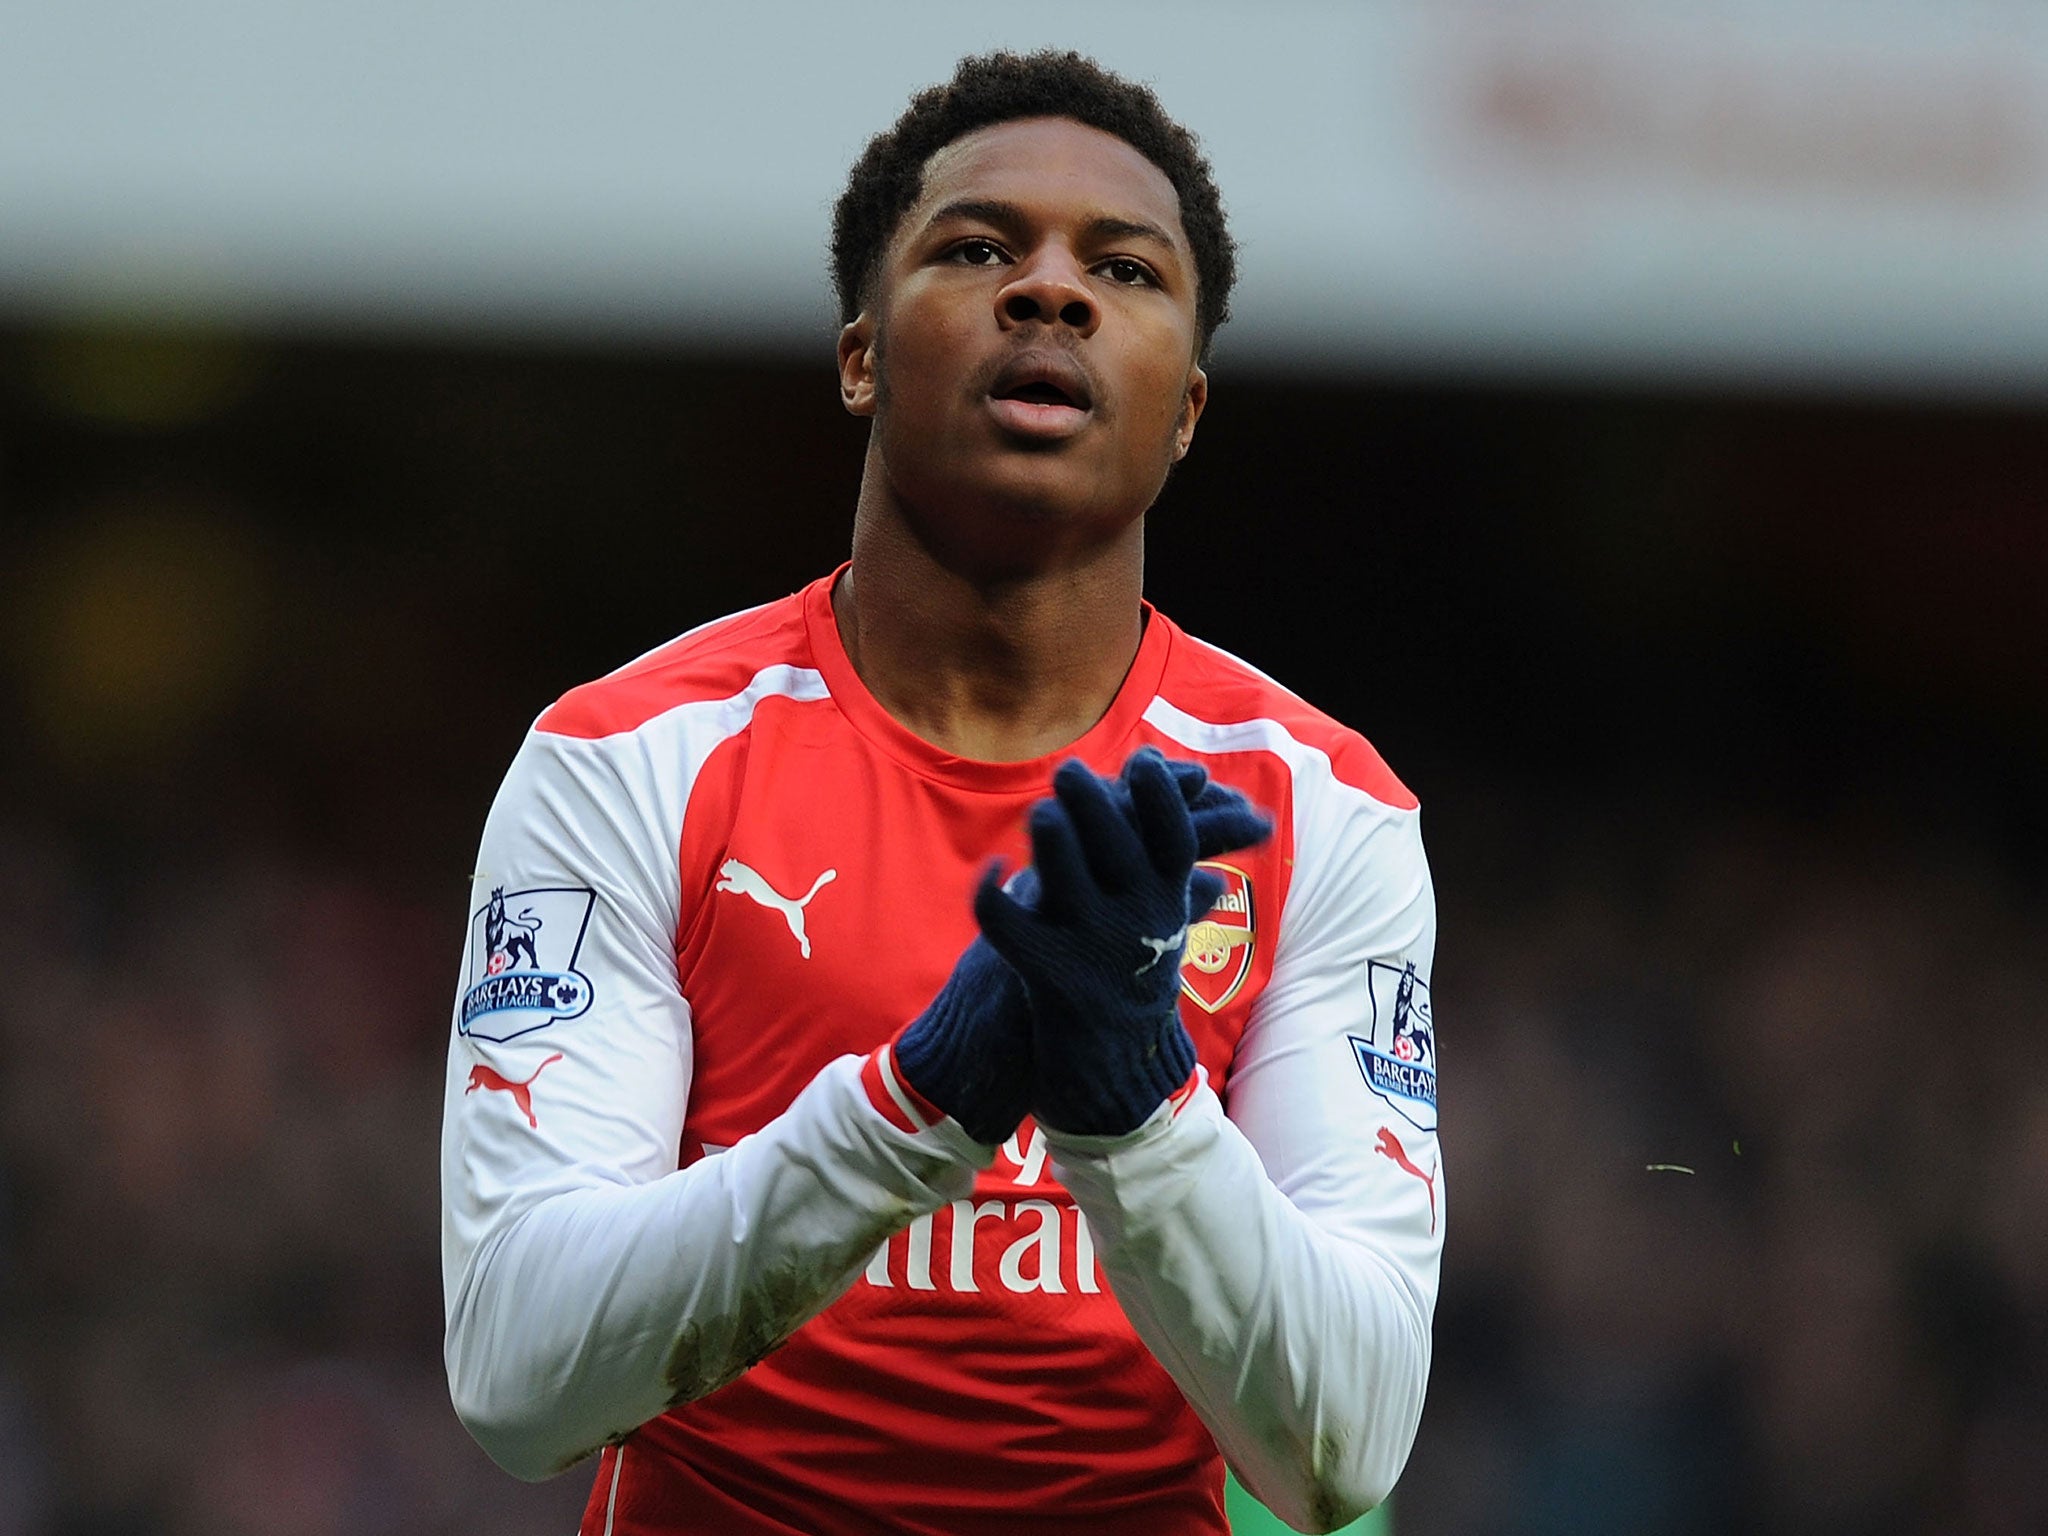 Arsenal striker Chuba Akpom looks set to go out on loan